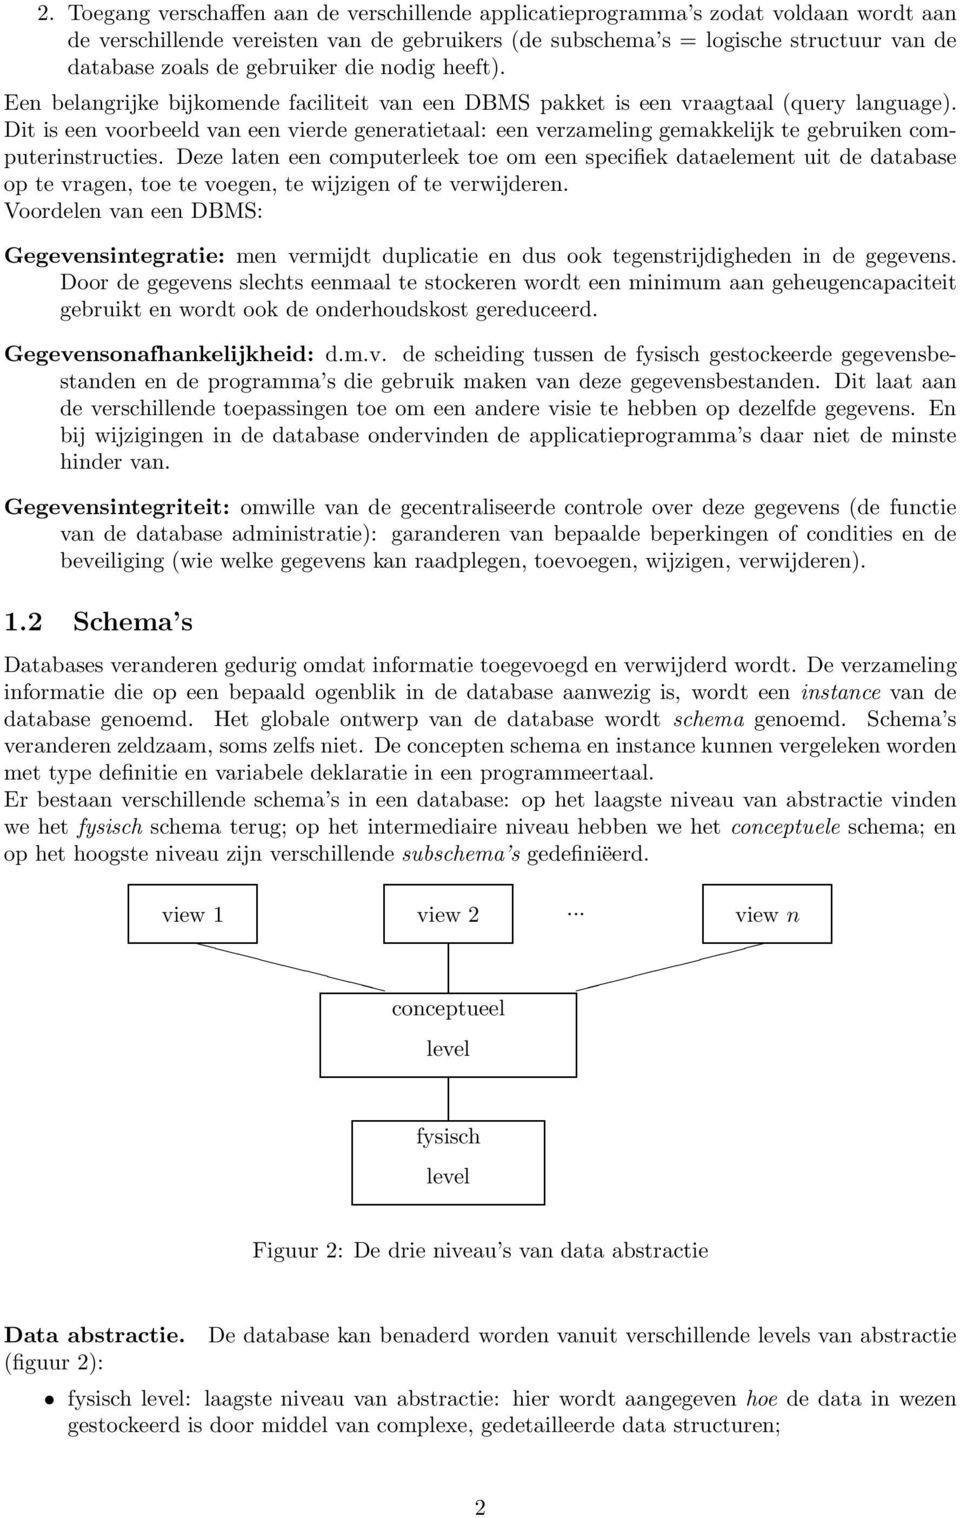 Dit is een voorbeeld van een vierde generatietaal: een verzameling gemakkelijk te gebruiken computerinstructies.